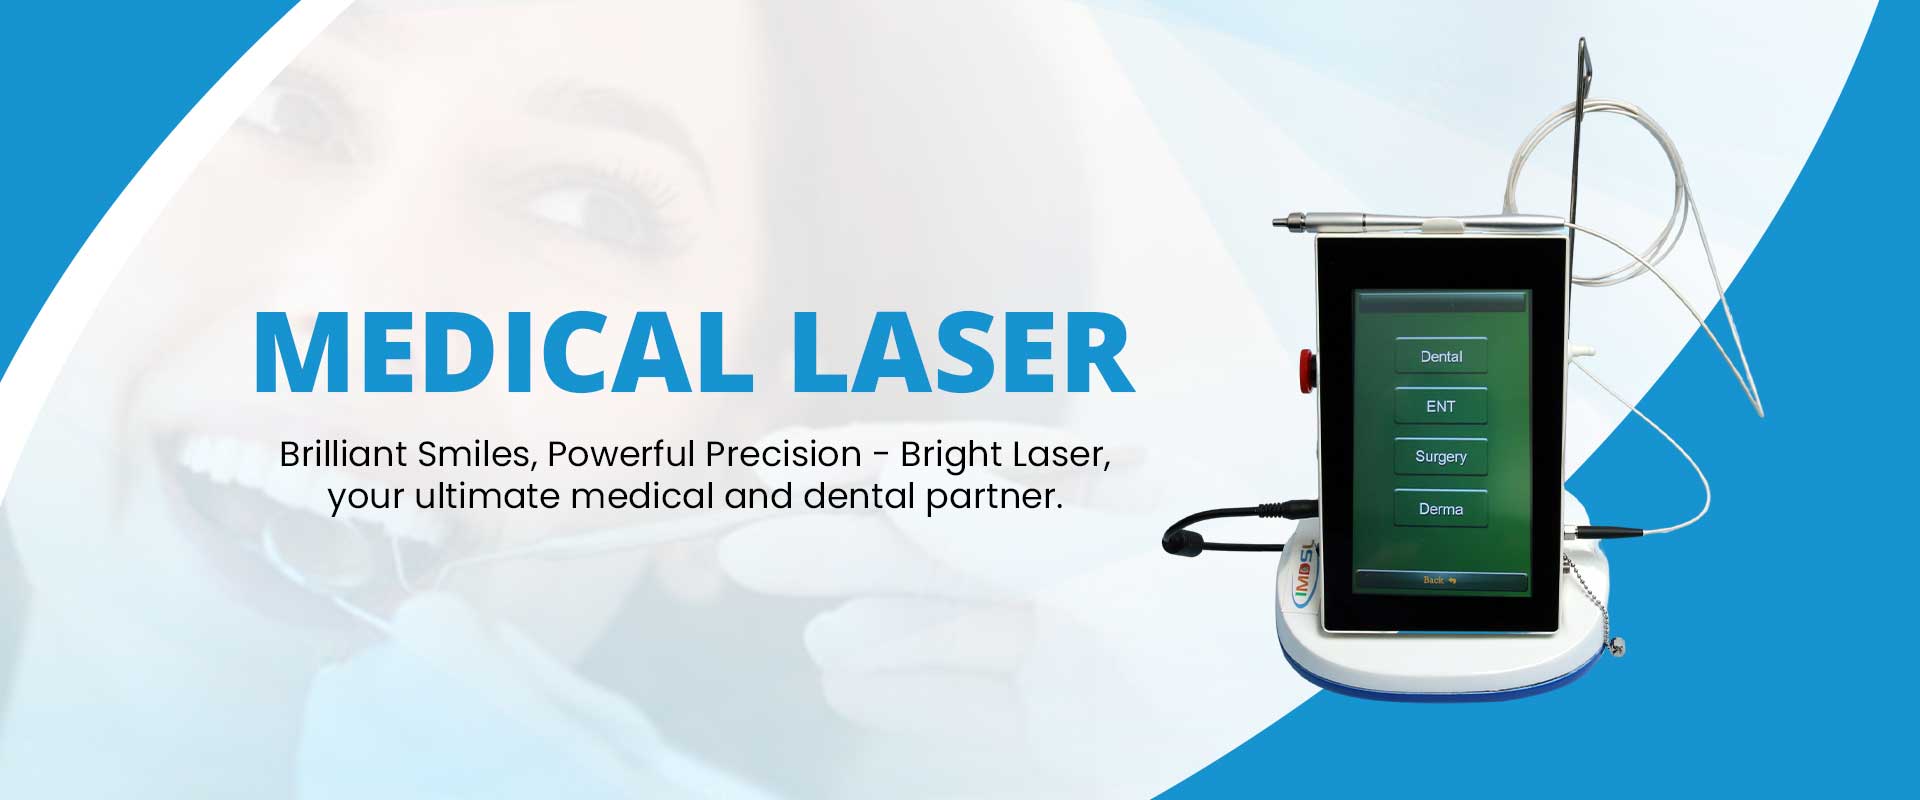 Medical Laser Manufacturers in Delhi